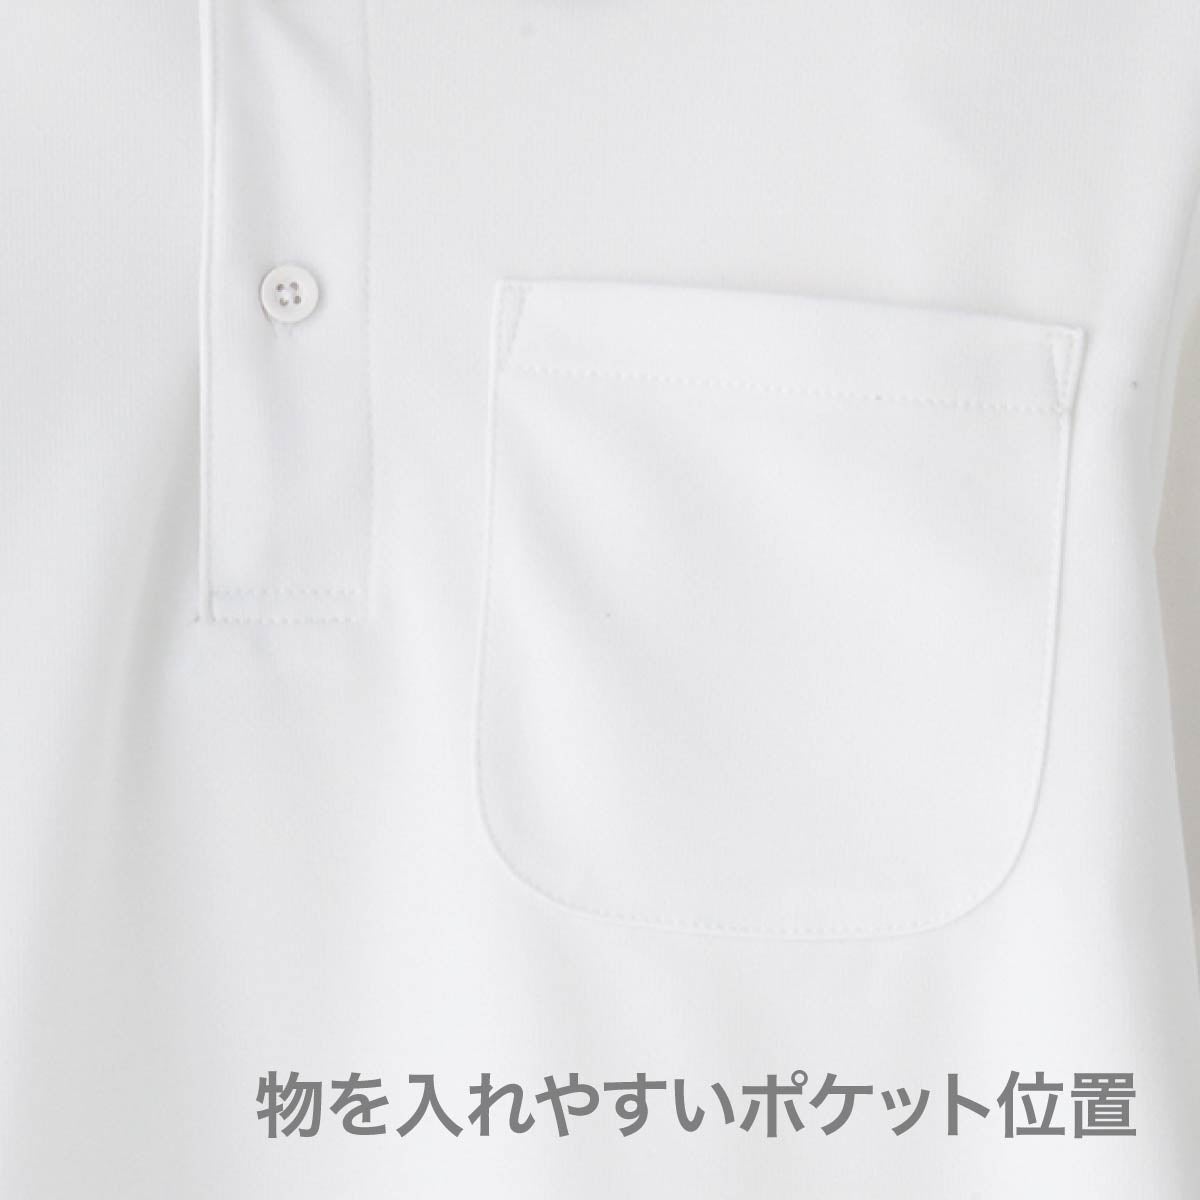 ポロシャツ(ユニセックス) | メンズ | 1枚 | MS3112 | ホワイト